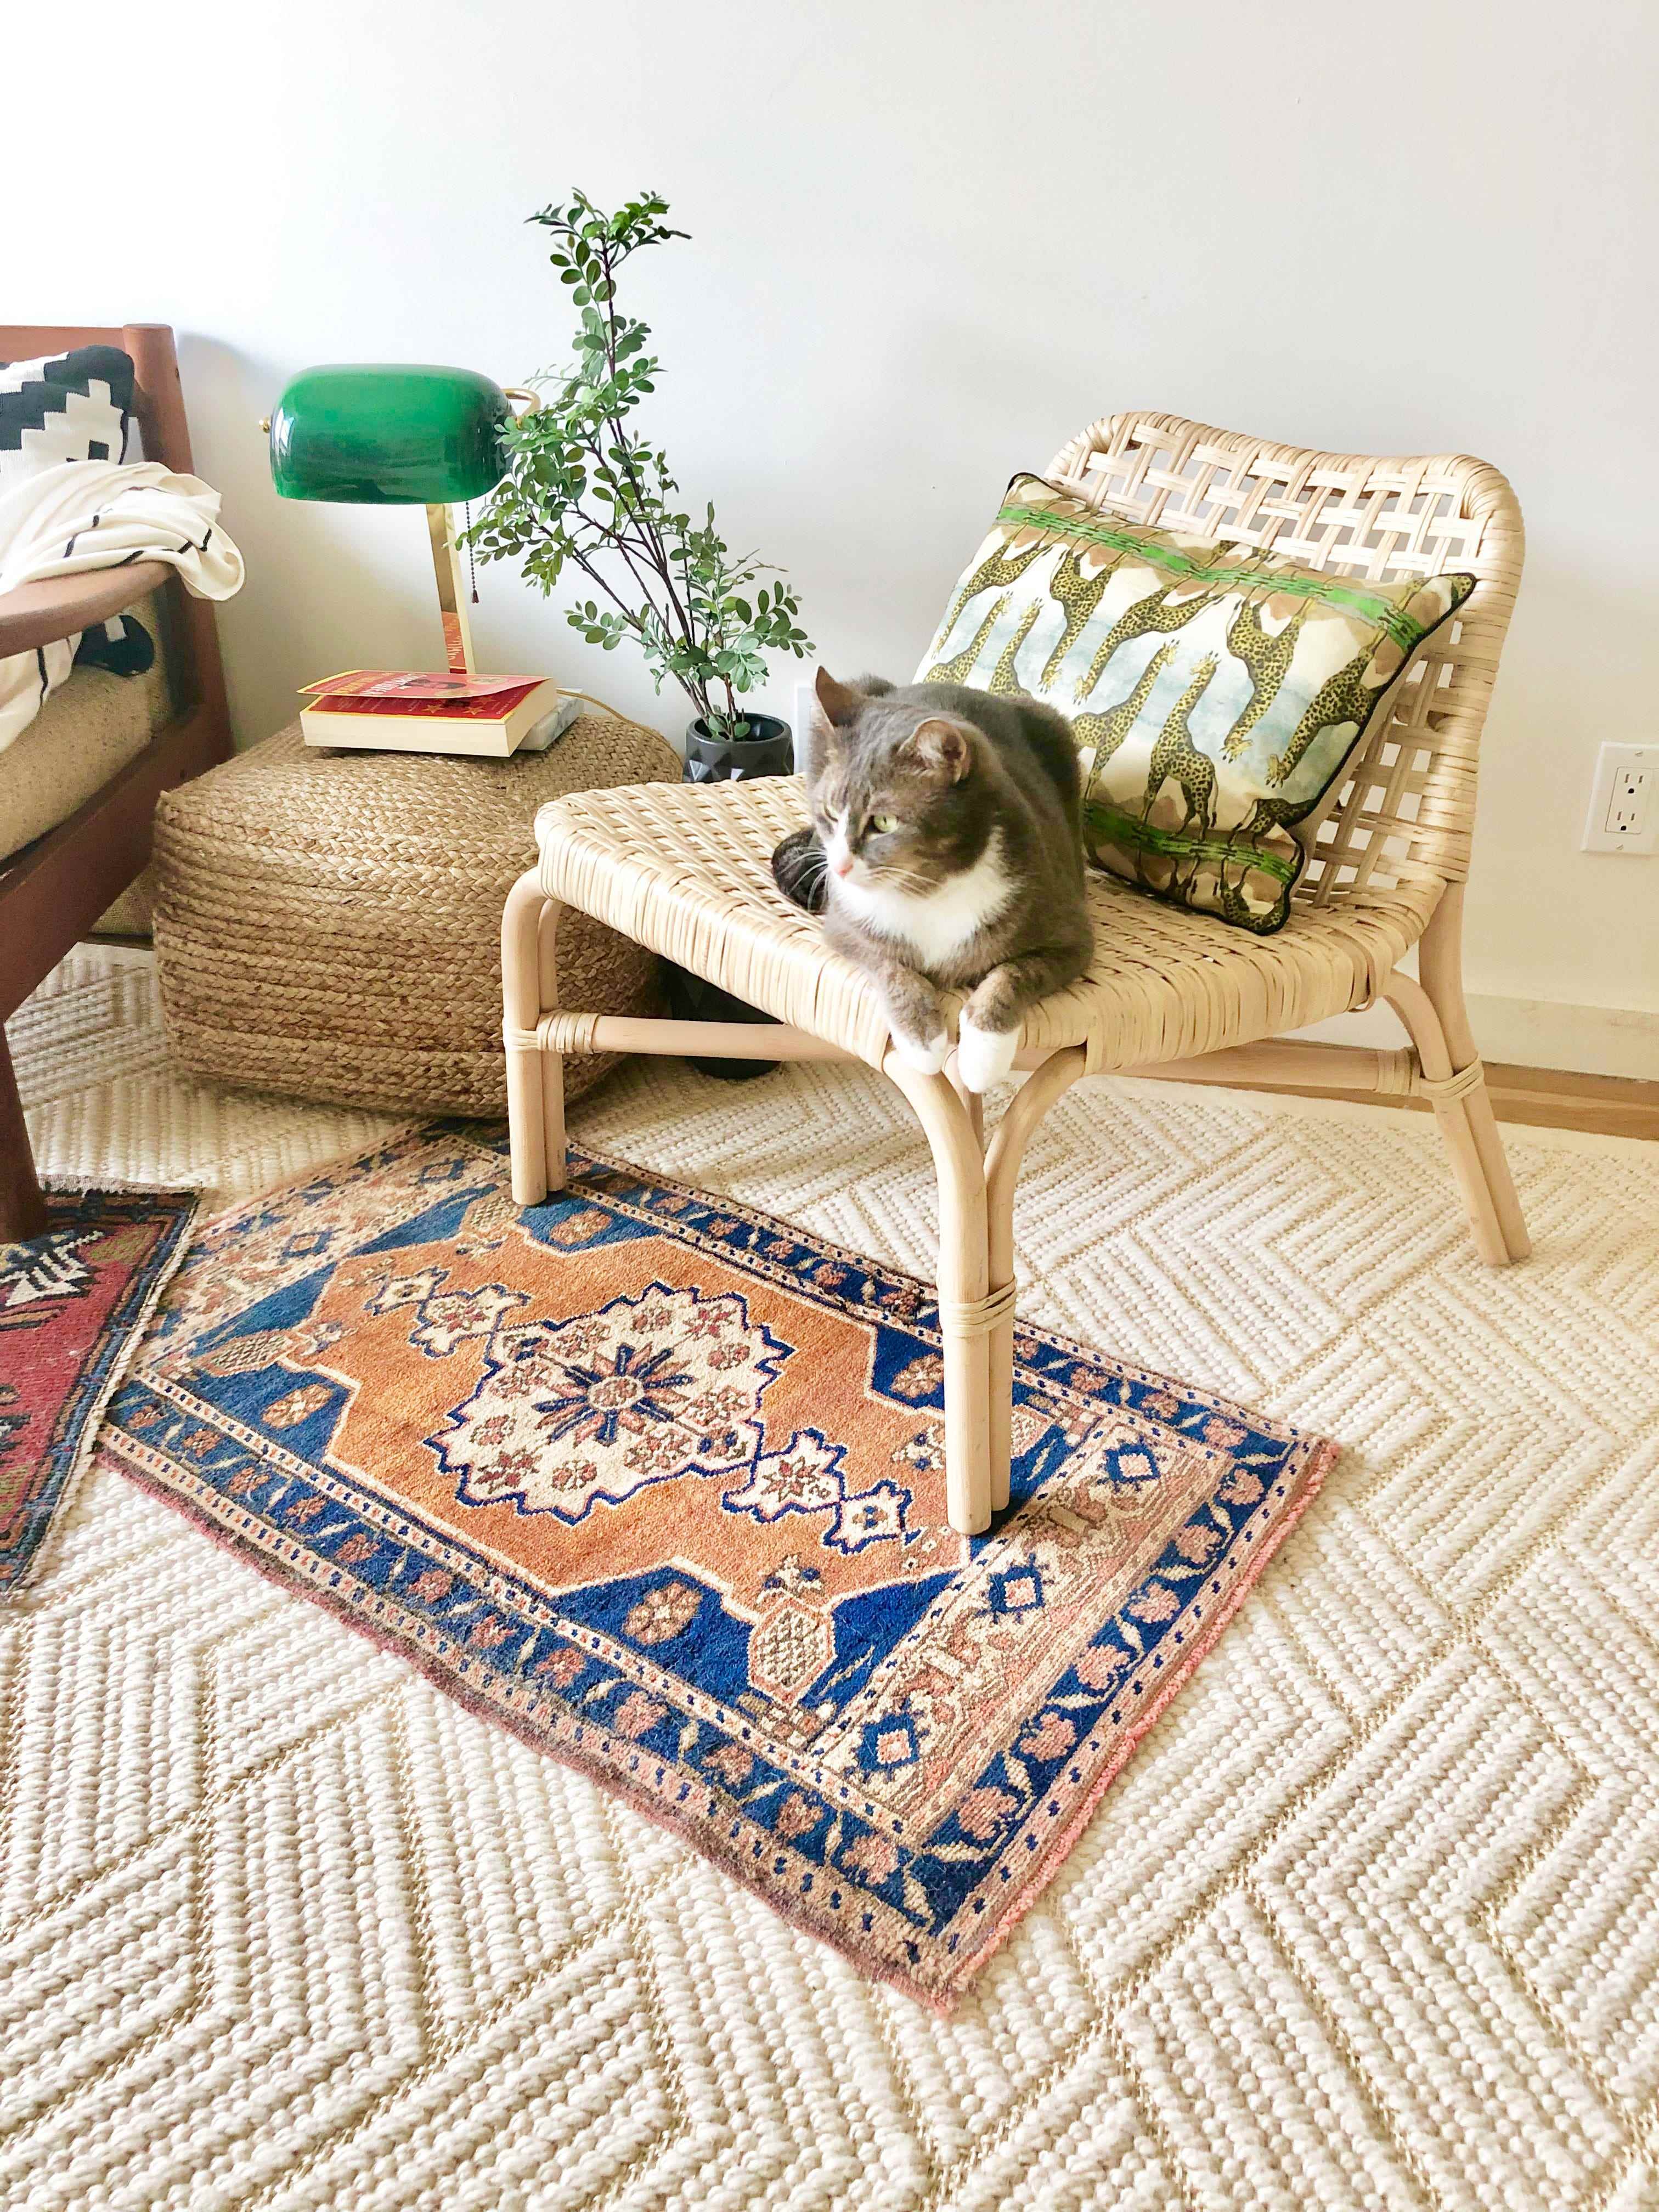 Der Monochrome Texture Dunescape Teppich von Rugs USA unter einem bunten Teppich und einem Stuhl mit einem Katzenstich darauf.